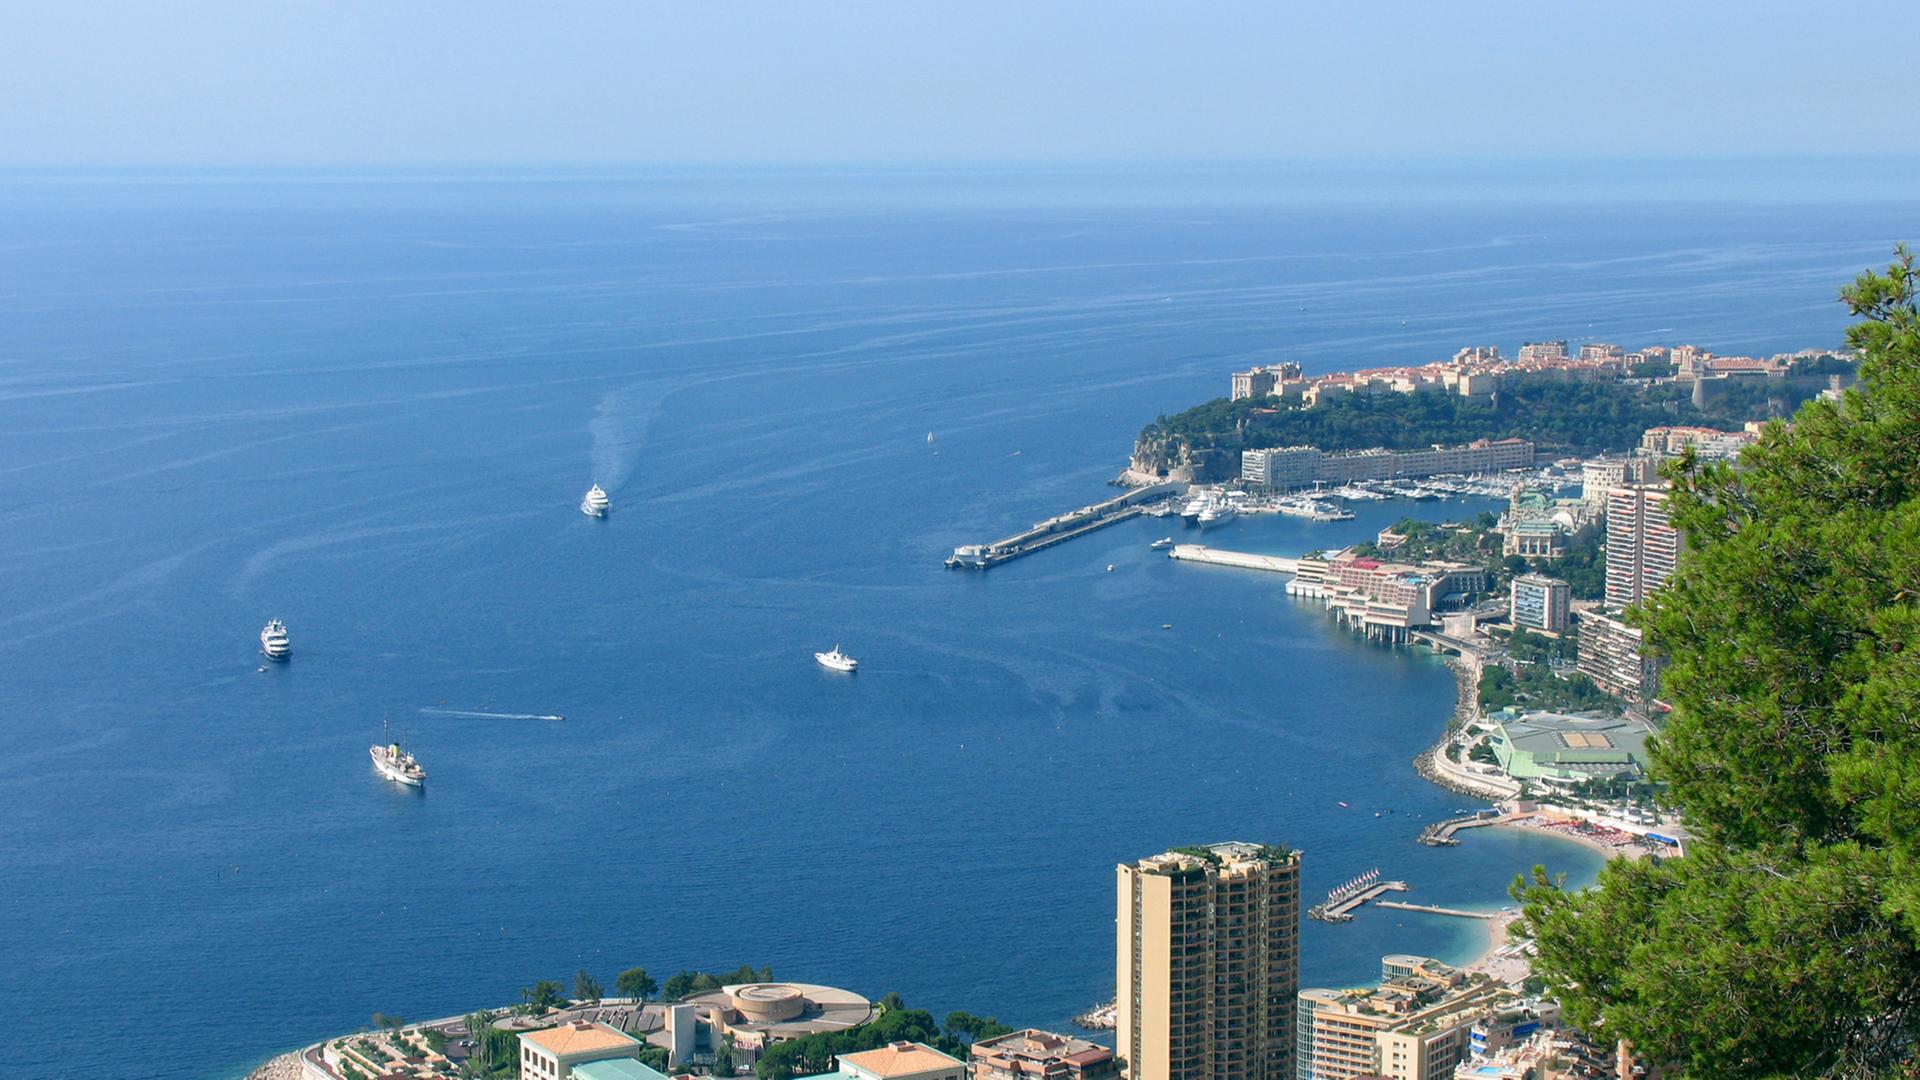 Blick auf Monte Carlo mit dem Casino im Vorder- und dem Yachthafen im Hintergrund. Am Berg hinten Monaco Ville mit Fürstenpalast und Meeresaquarium.